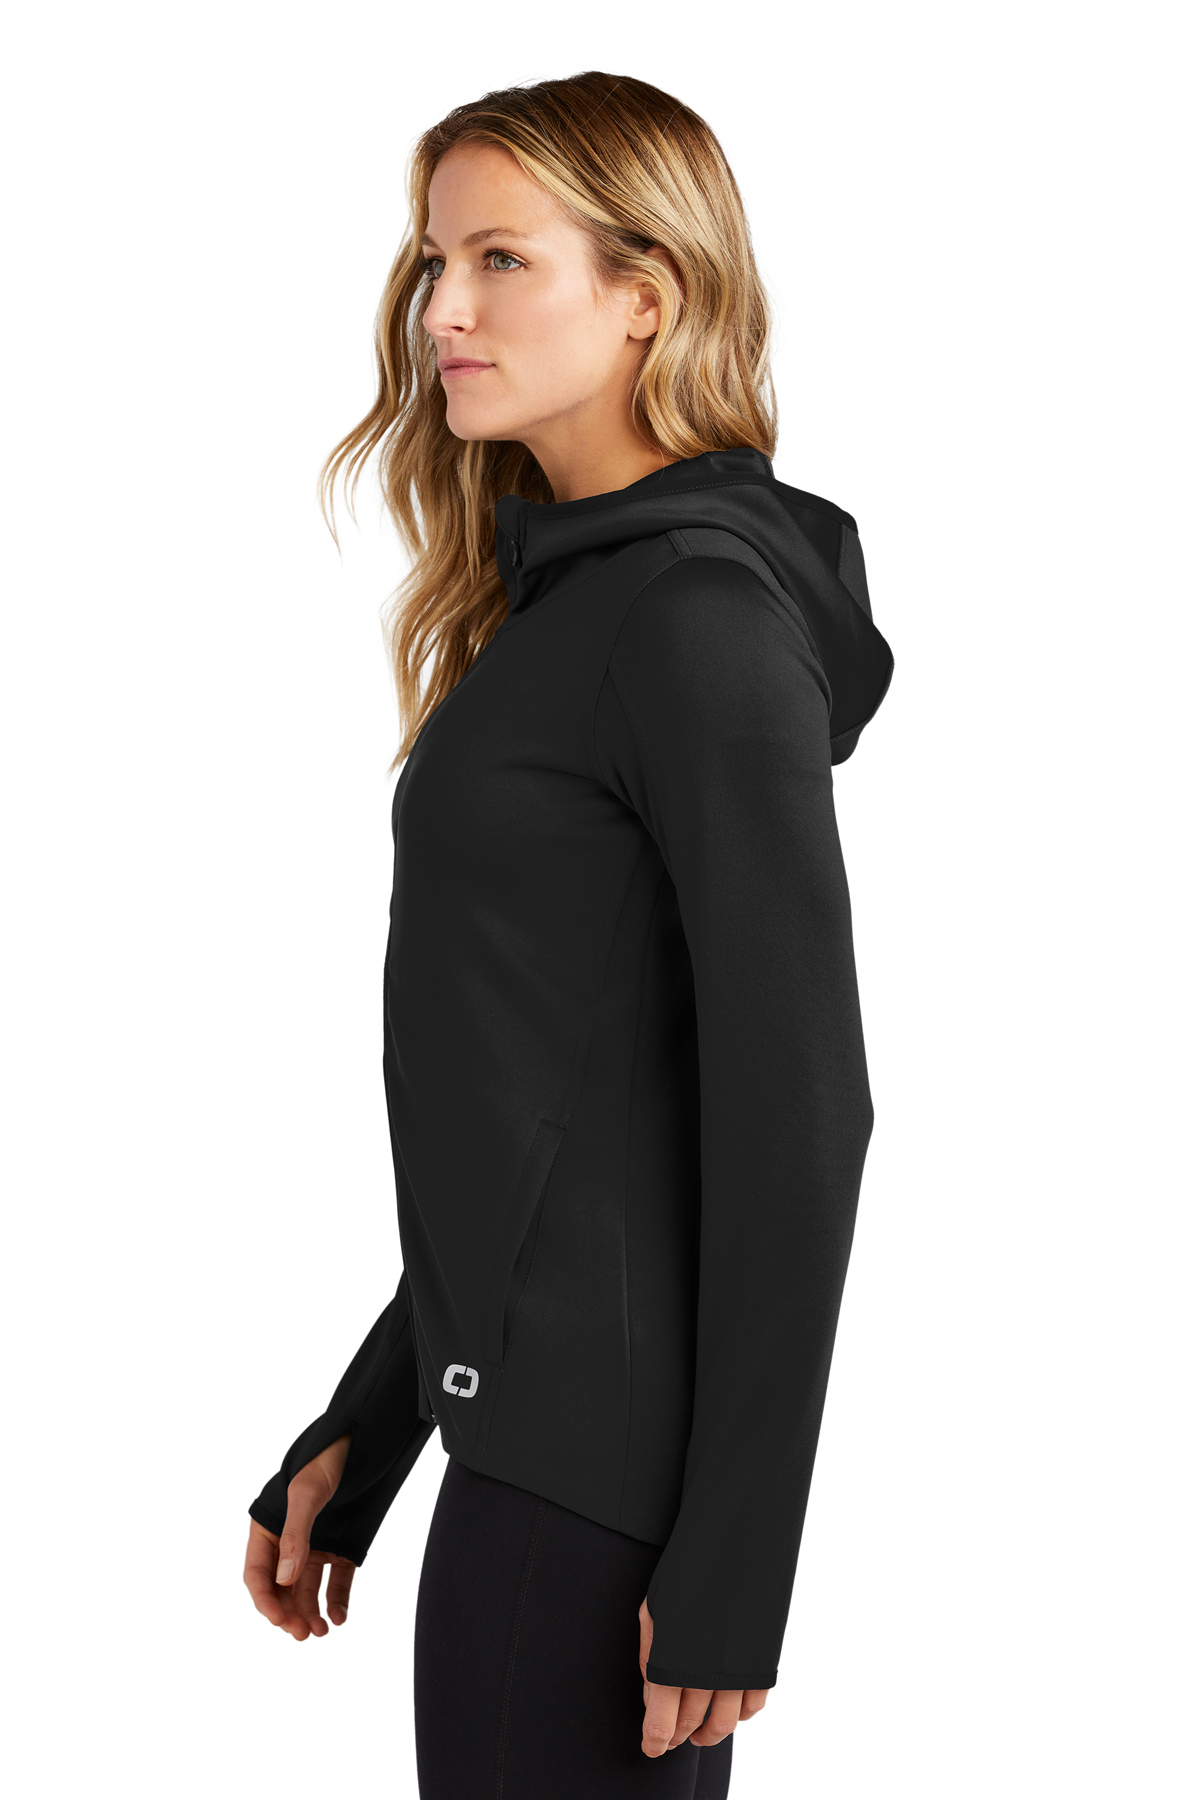 OGIO Ladies Stealth Full-Zip Jacket | Product | SanMar